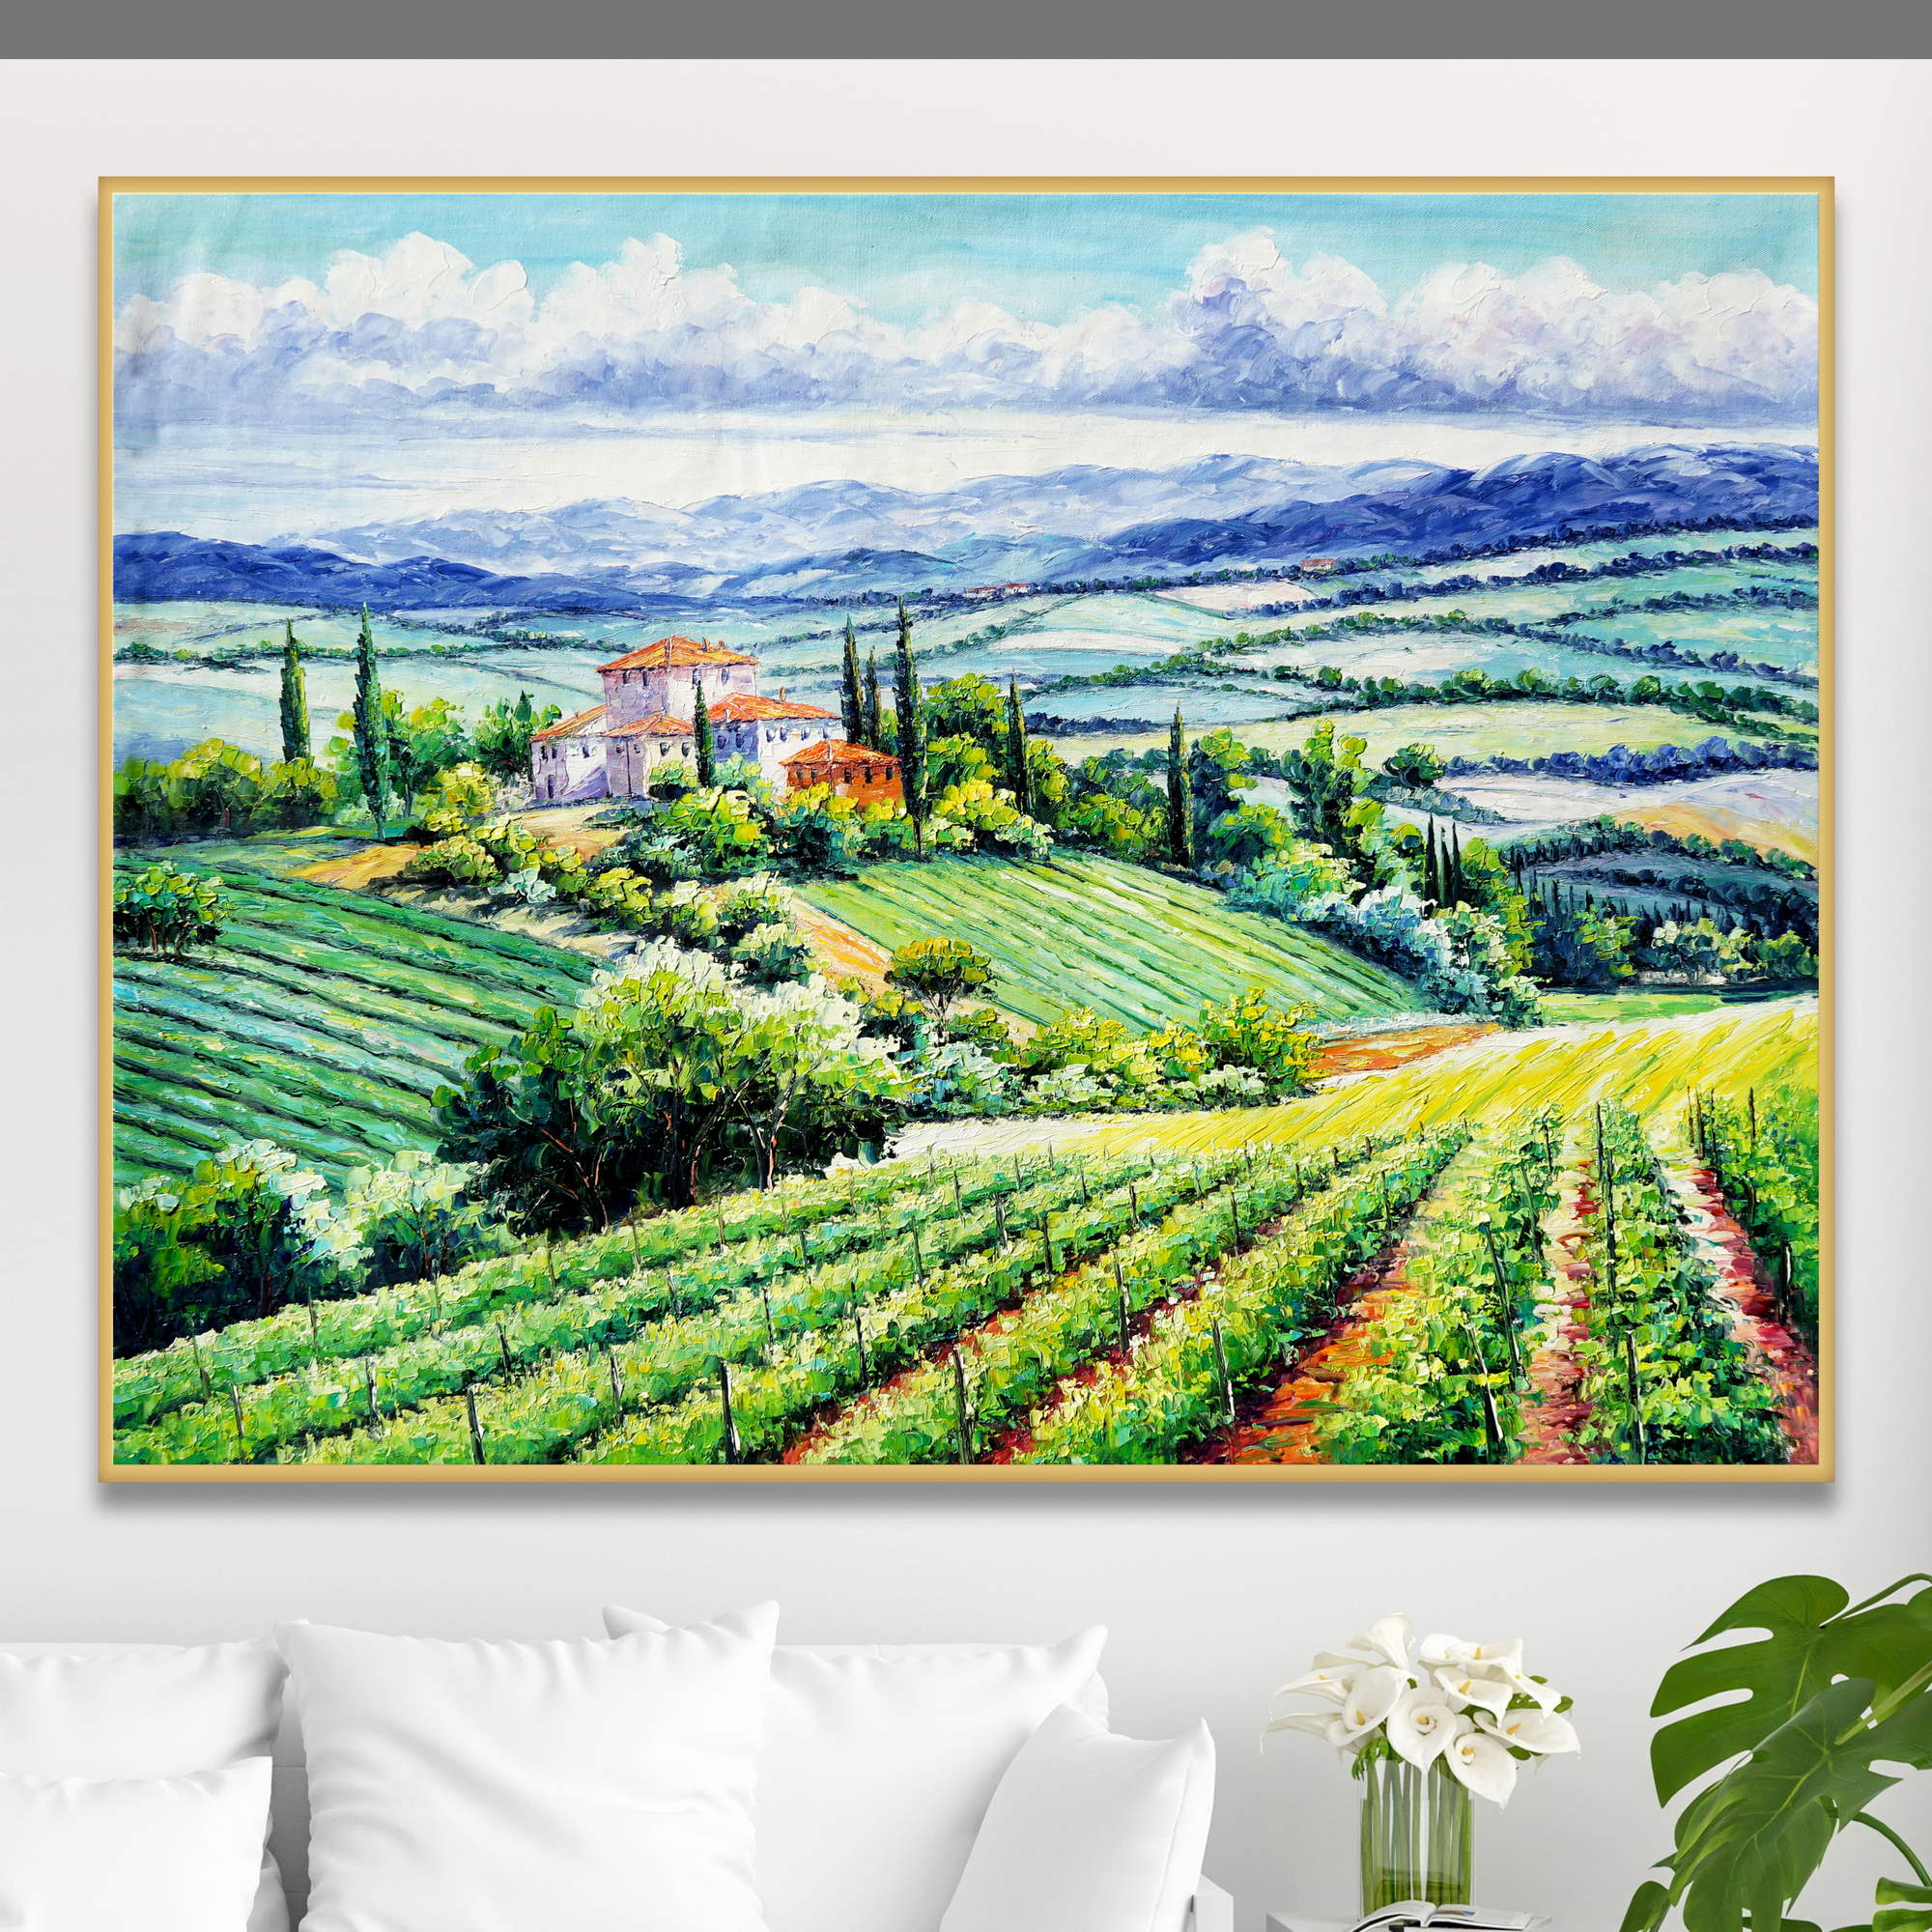 Dipinto di un paesaggio toscano con vigneti e casa colonica